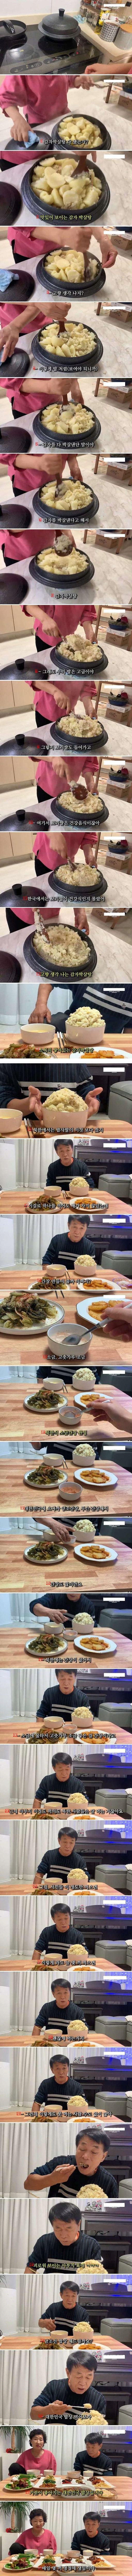 脱北者たちも食べるのが難しい北朝鮮の庶民の食べ物